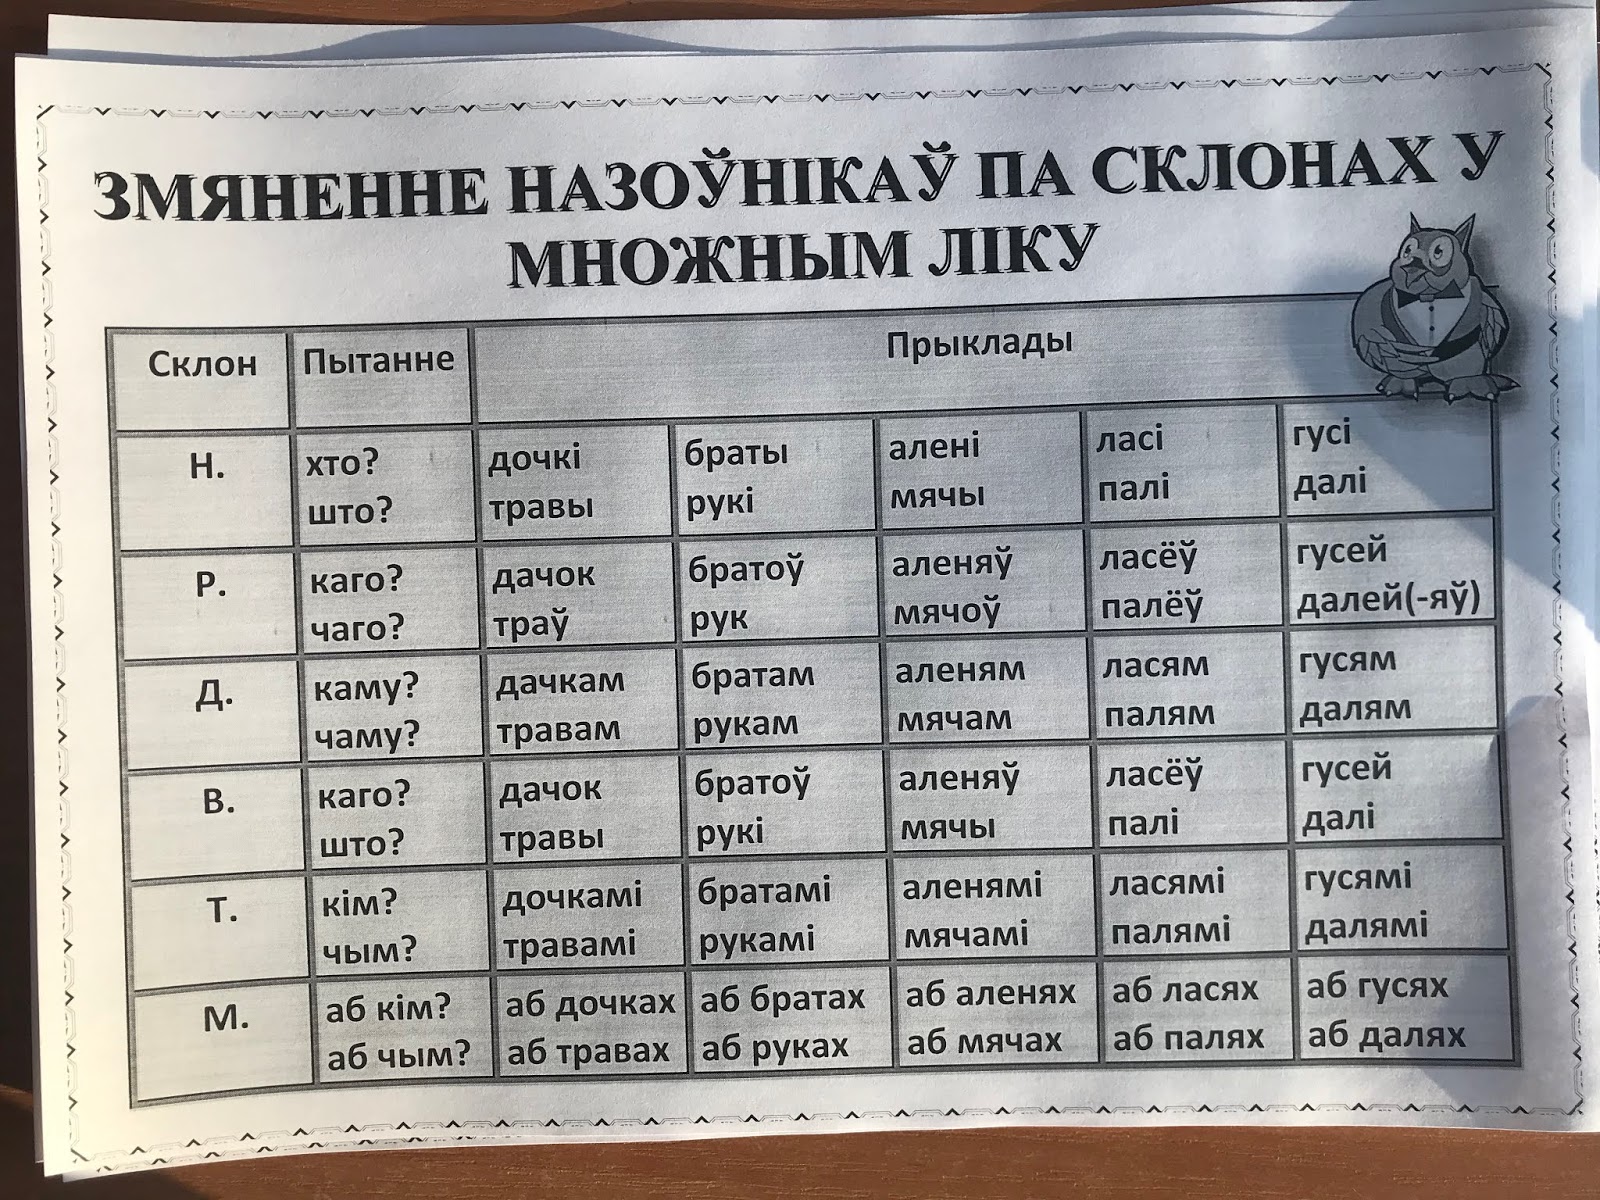 Род назоўнікаў у беларускай мове